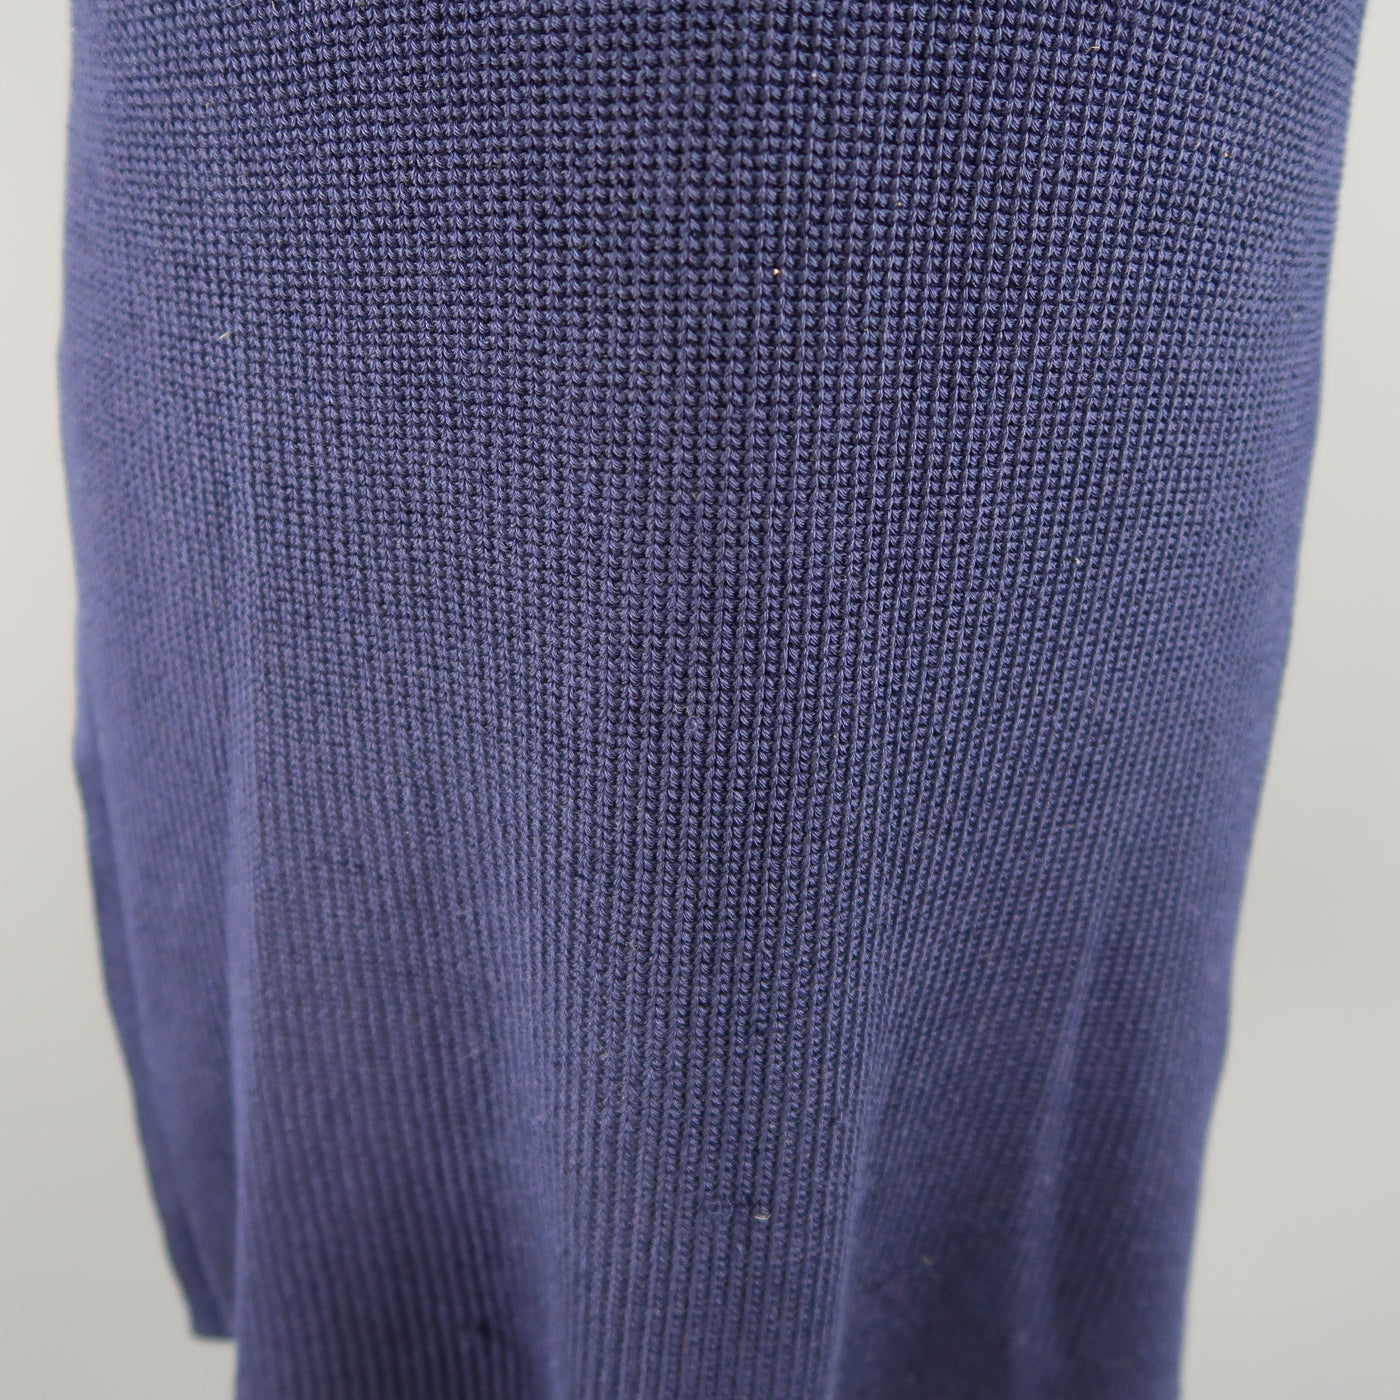 RALPH LAUREN Size M Navy Silk Blend Sleeveless Long Sweater Vest Top